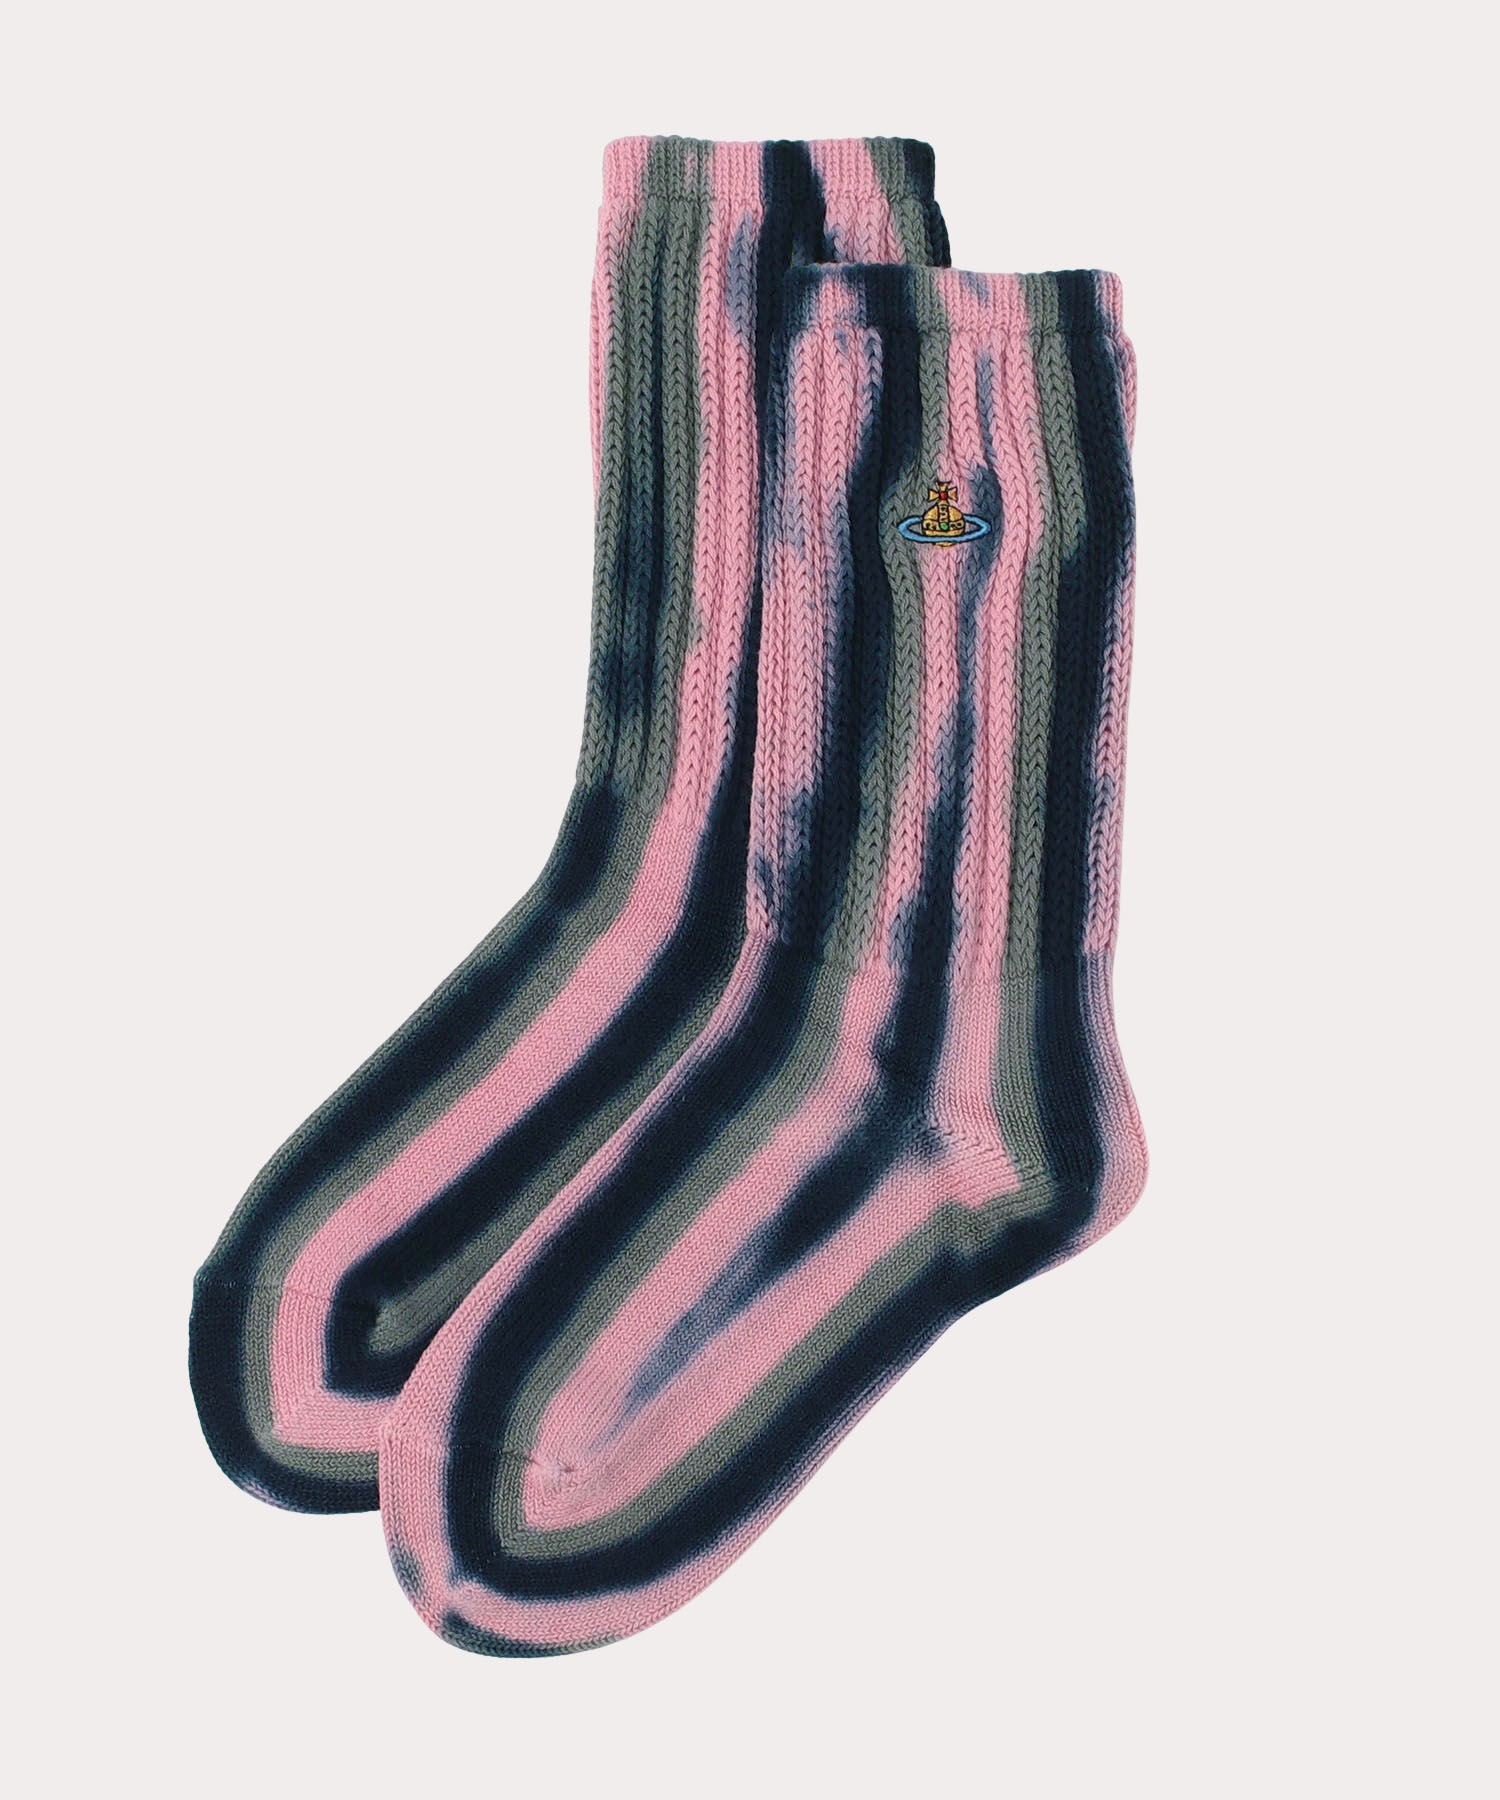 Vivienne Westwood 靴下 ソックス レッグウェア ピンク - ソックス